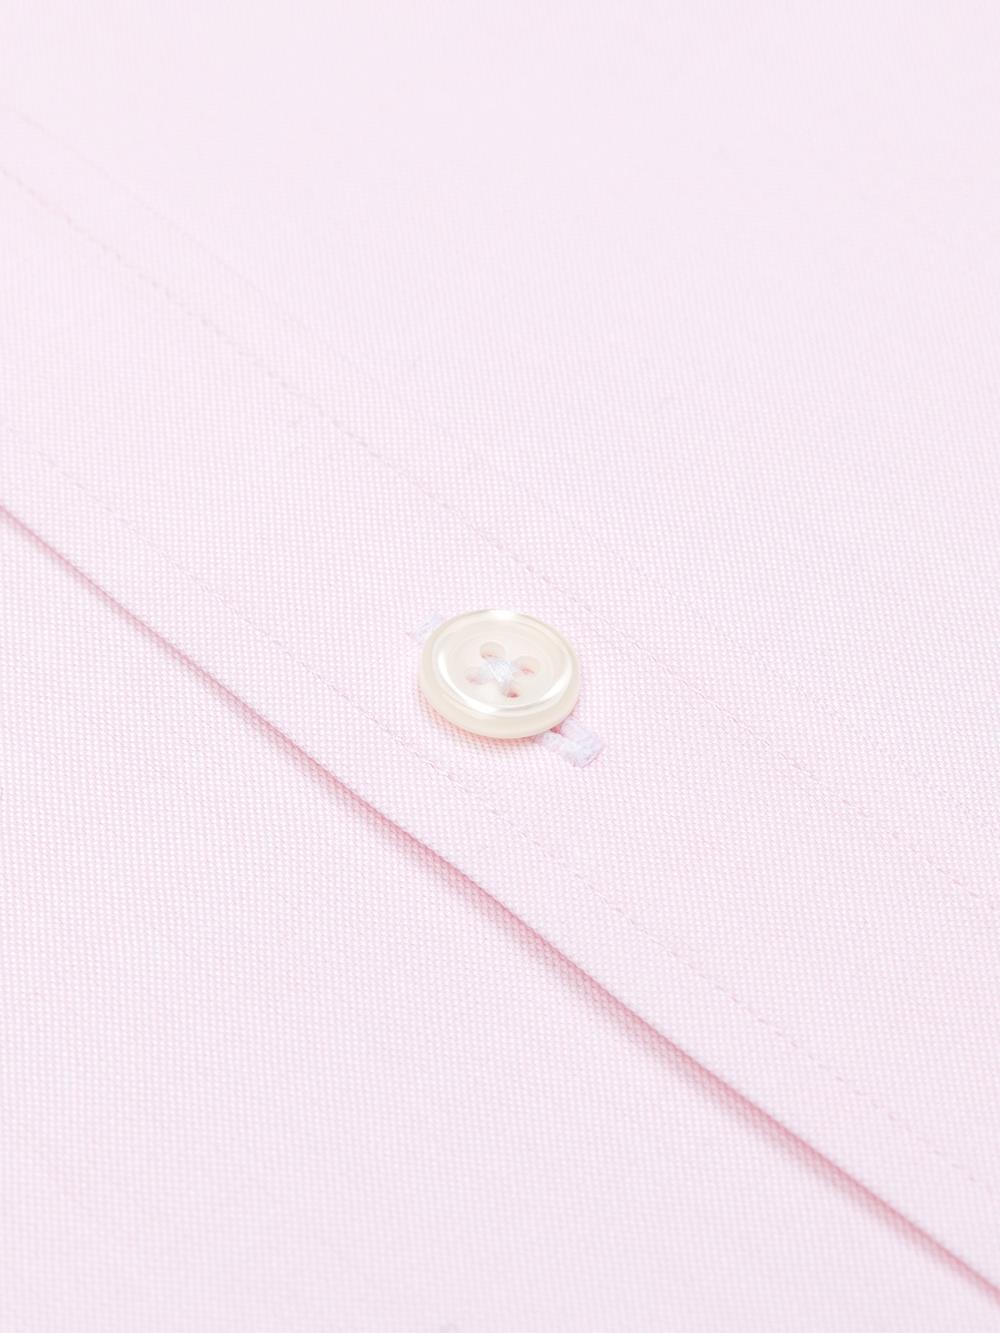 Camicia a punta rosa - Colletto abbottonato